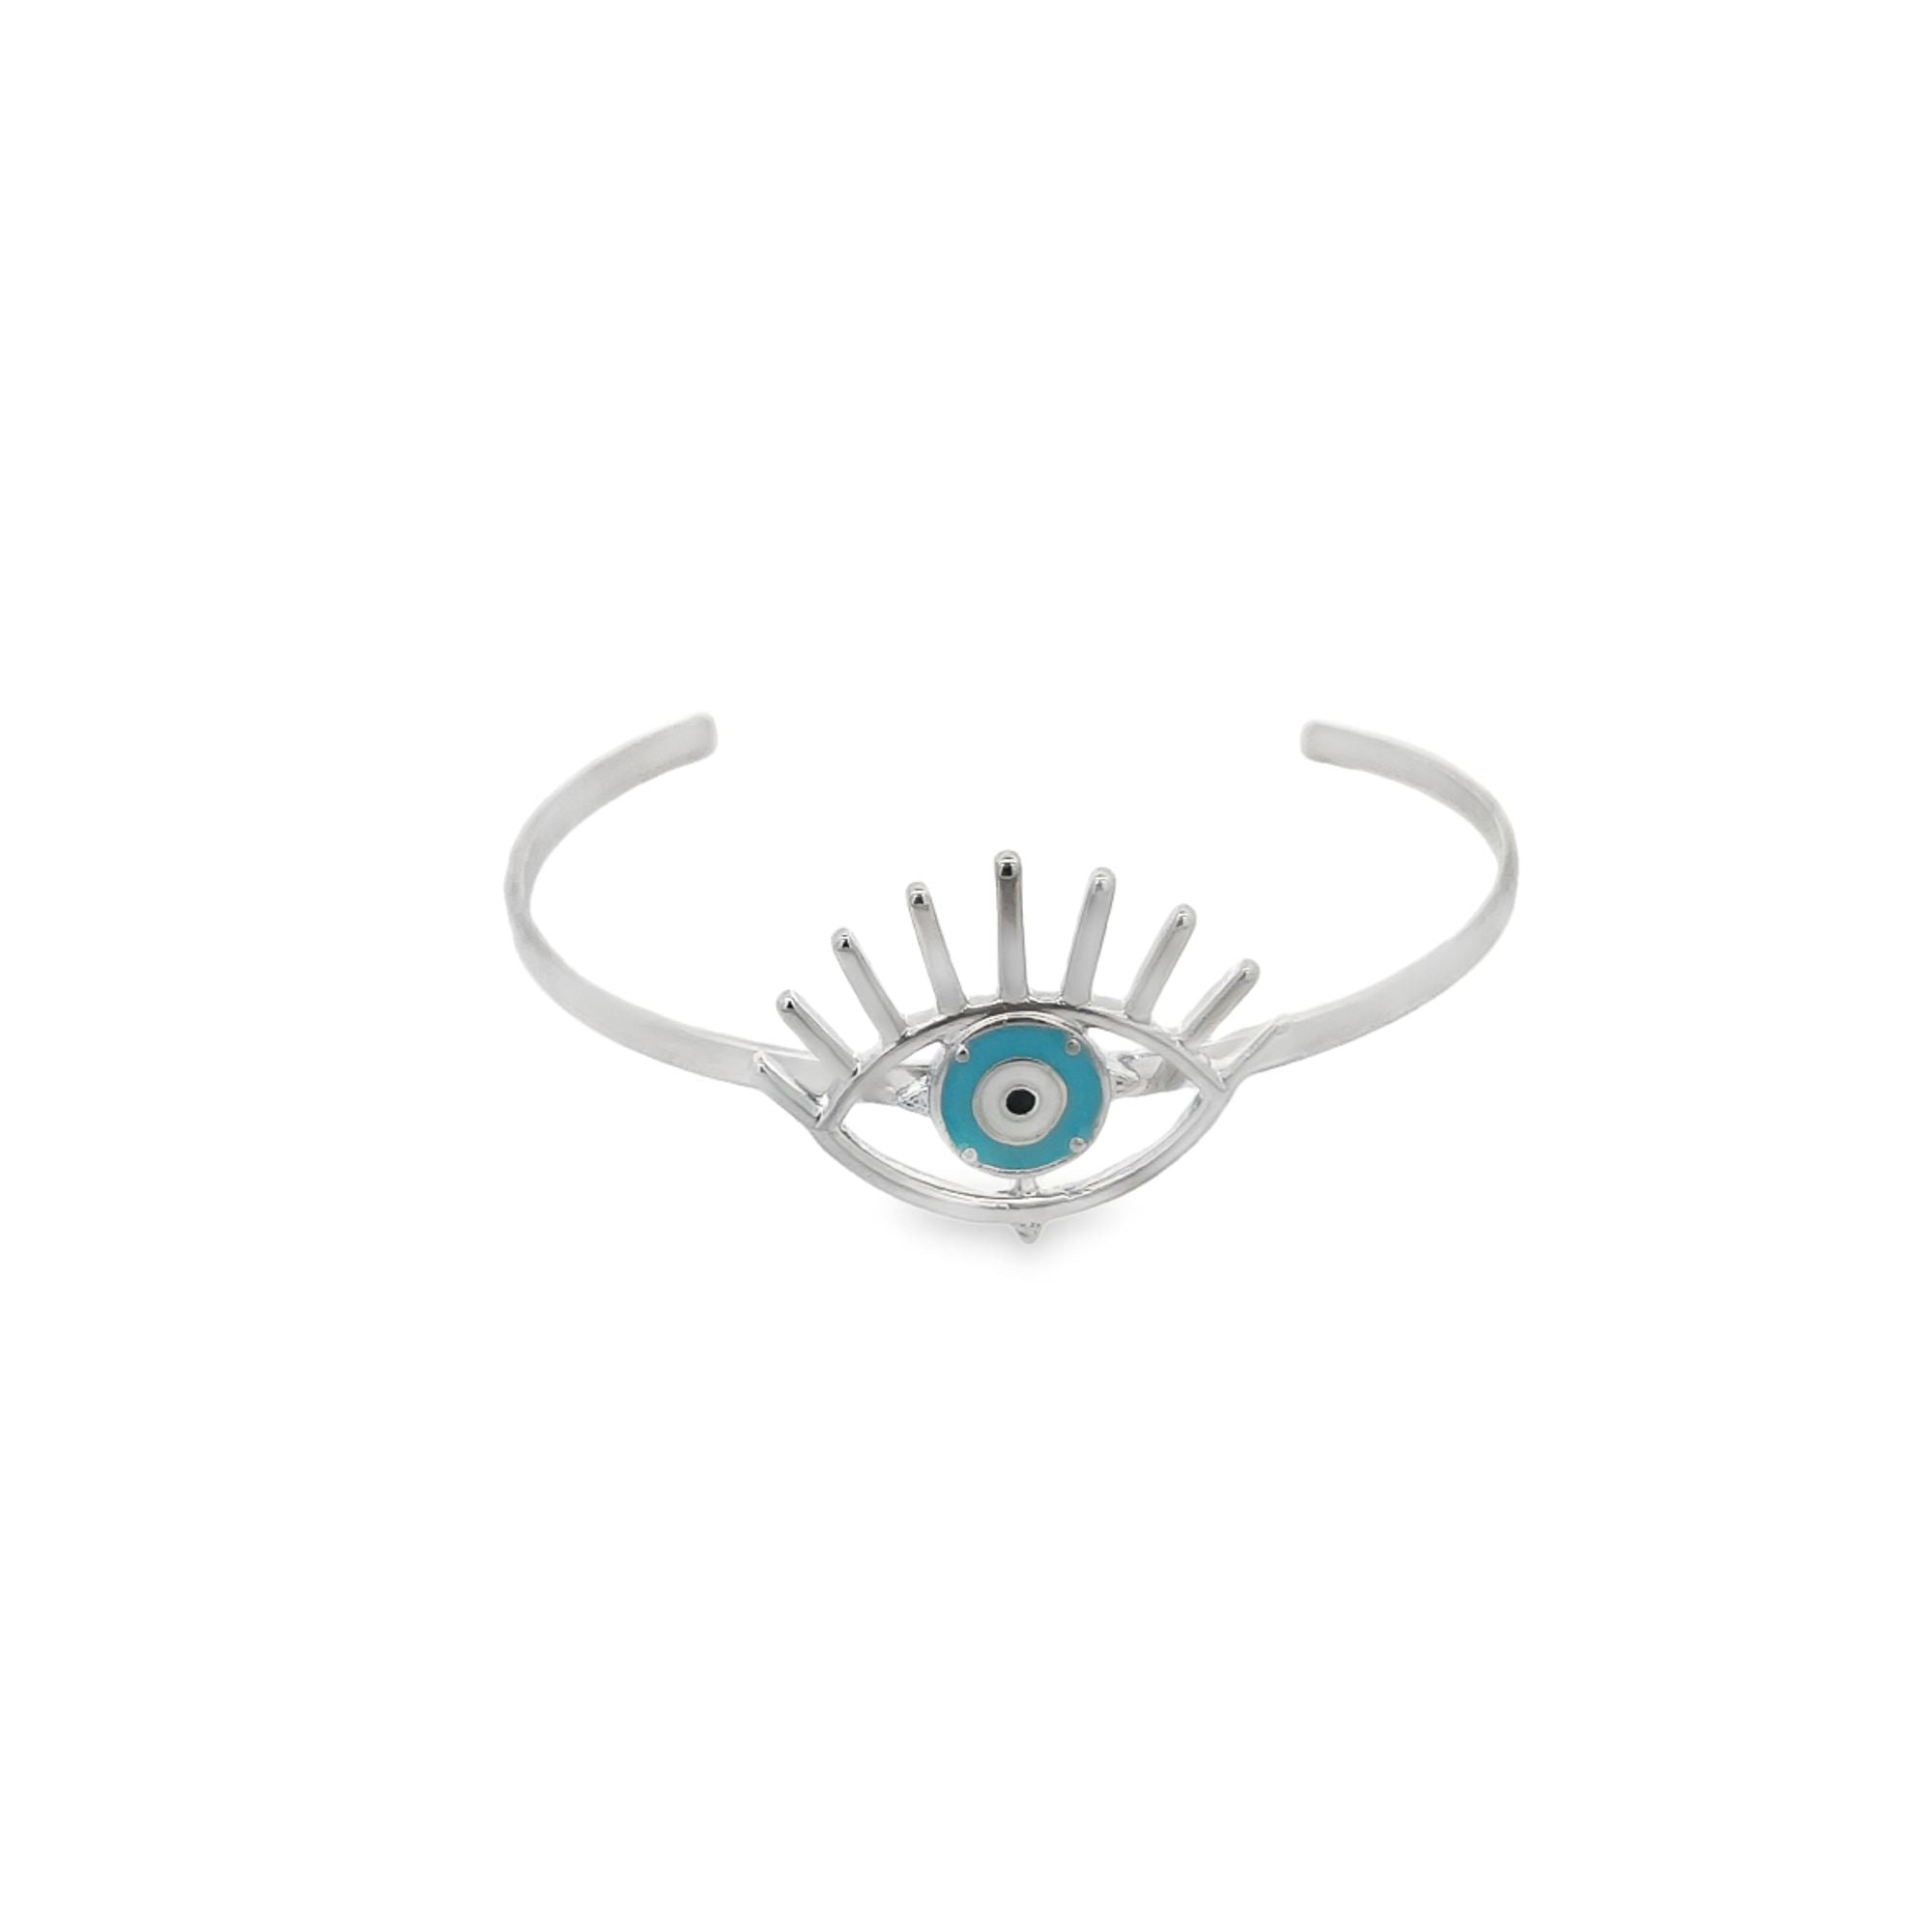 Enamel Evil Eye With lashes Cuff Bangle Bracelet (B27)